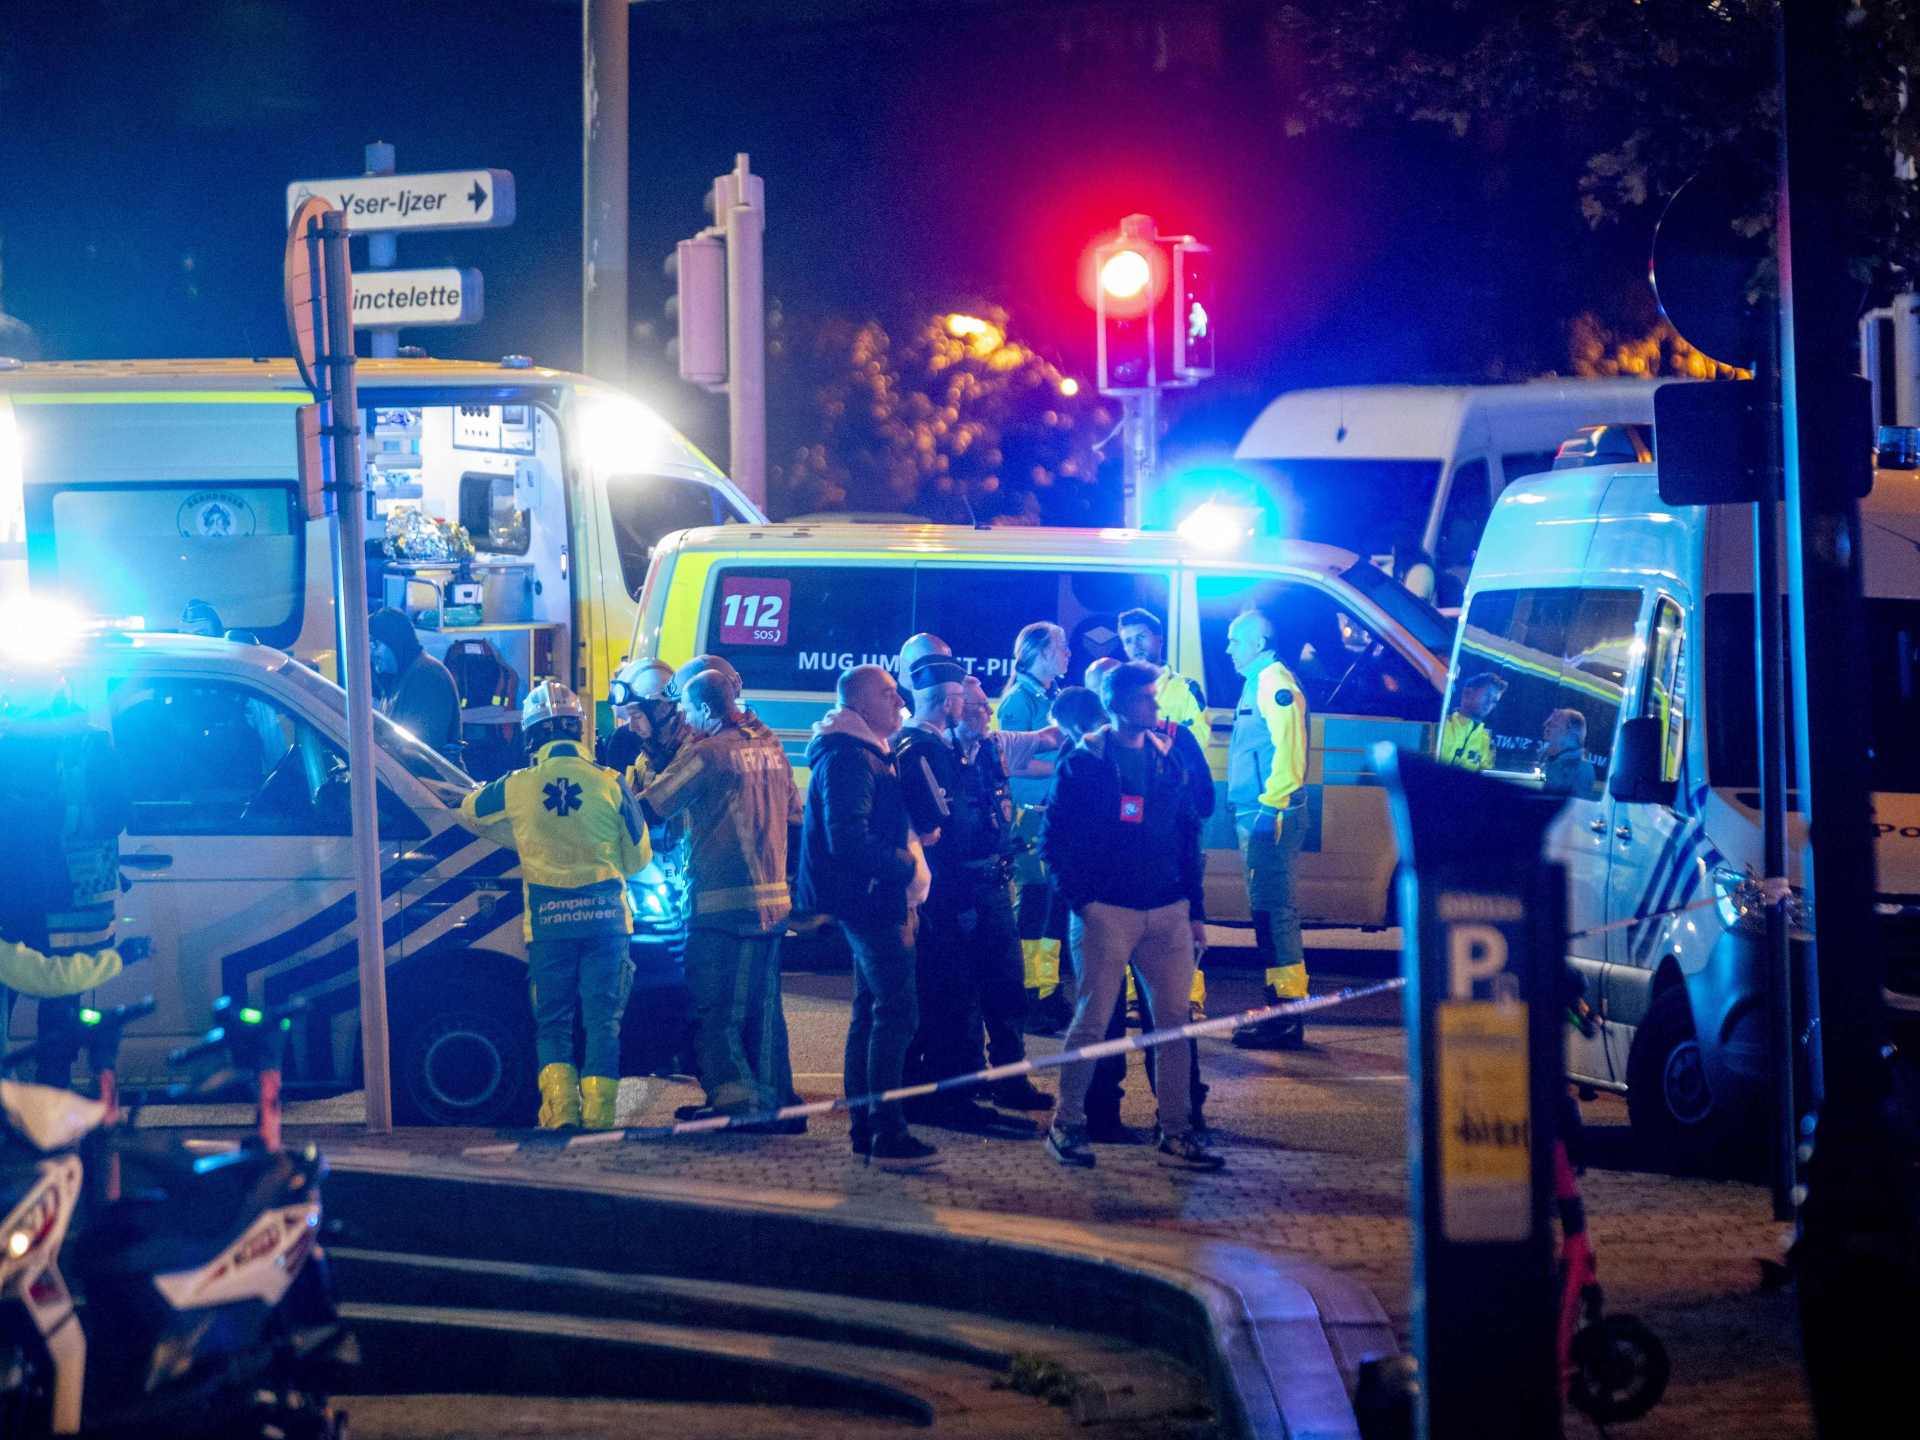 مقتل شخصين بالرصاص في بروكسل يلغي مباراة بلجيكا والسويد بتصفيات يورو 2024 | أخبار رياضة – البوكس نيوز